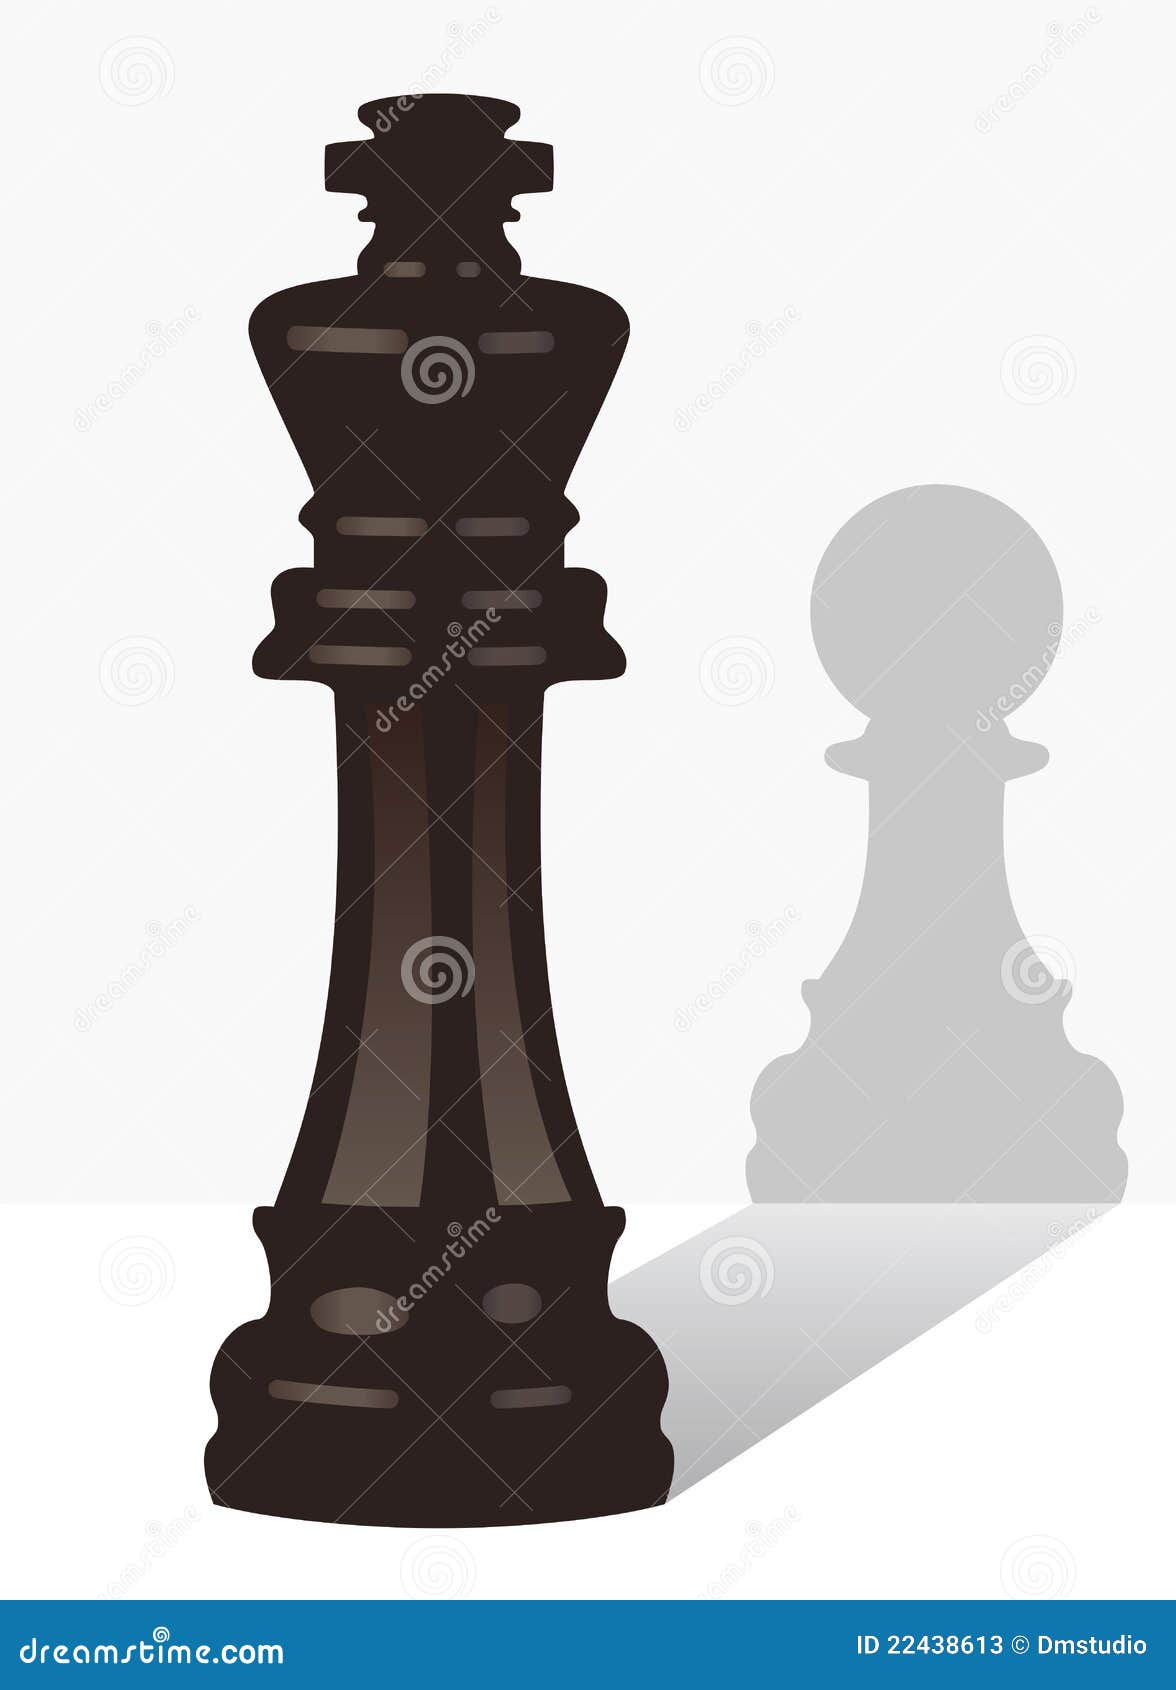 Peças de xadrez ícones de linha fina rei rainha bispo gralha